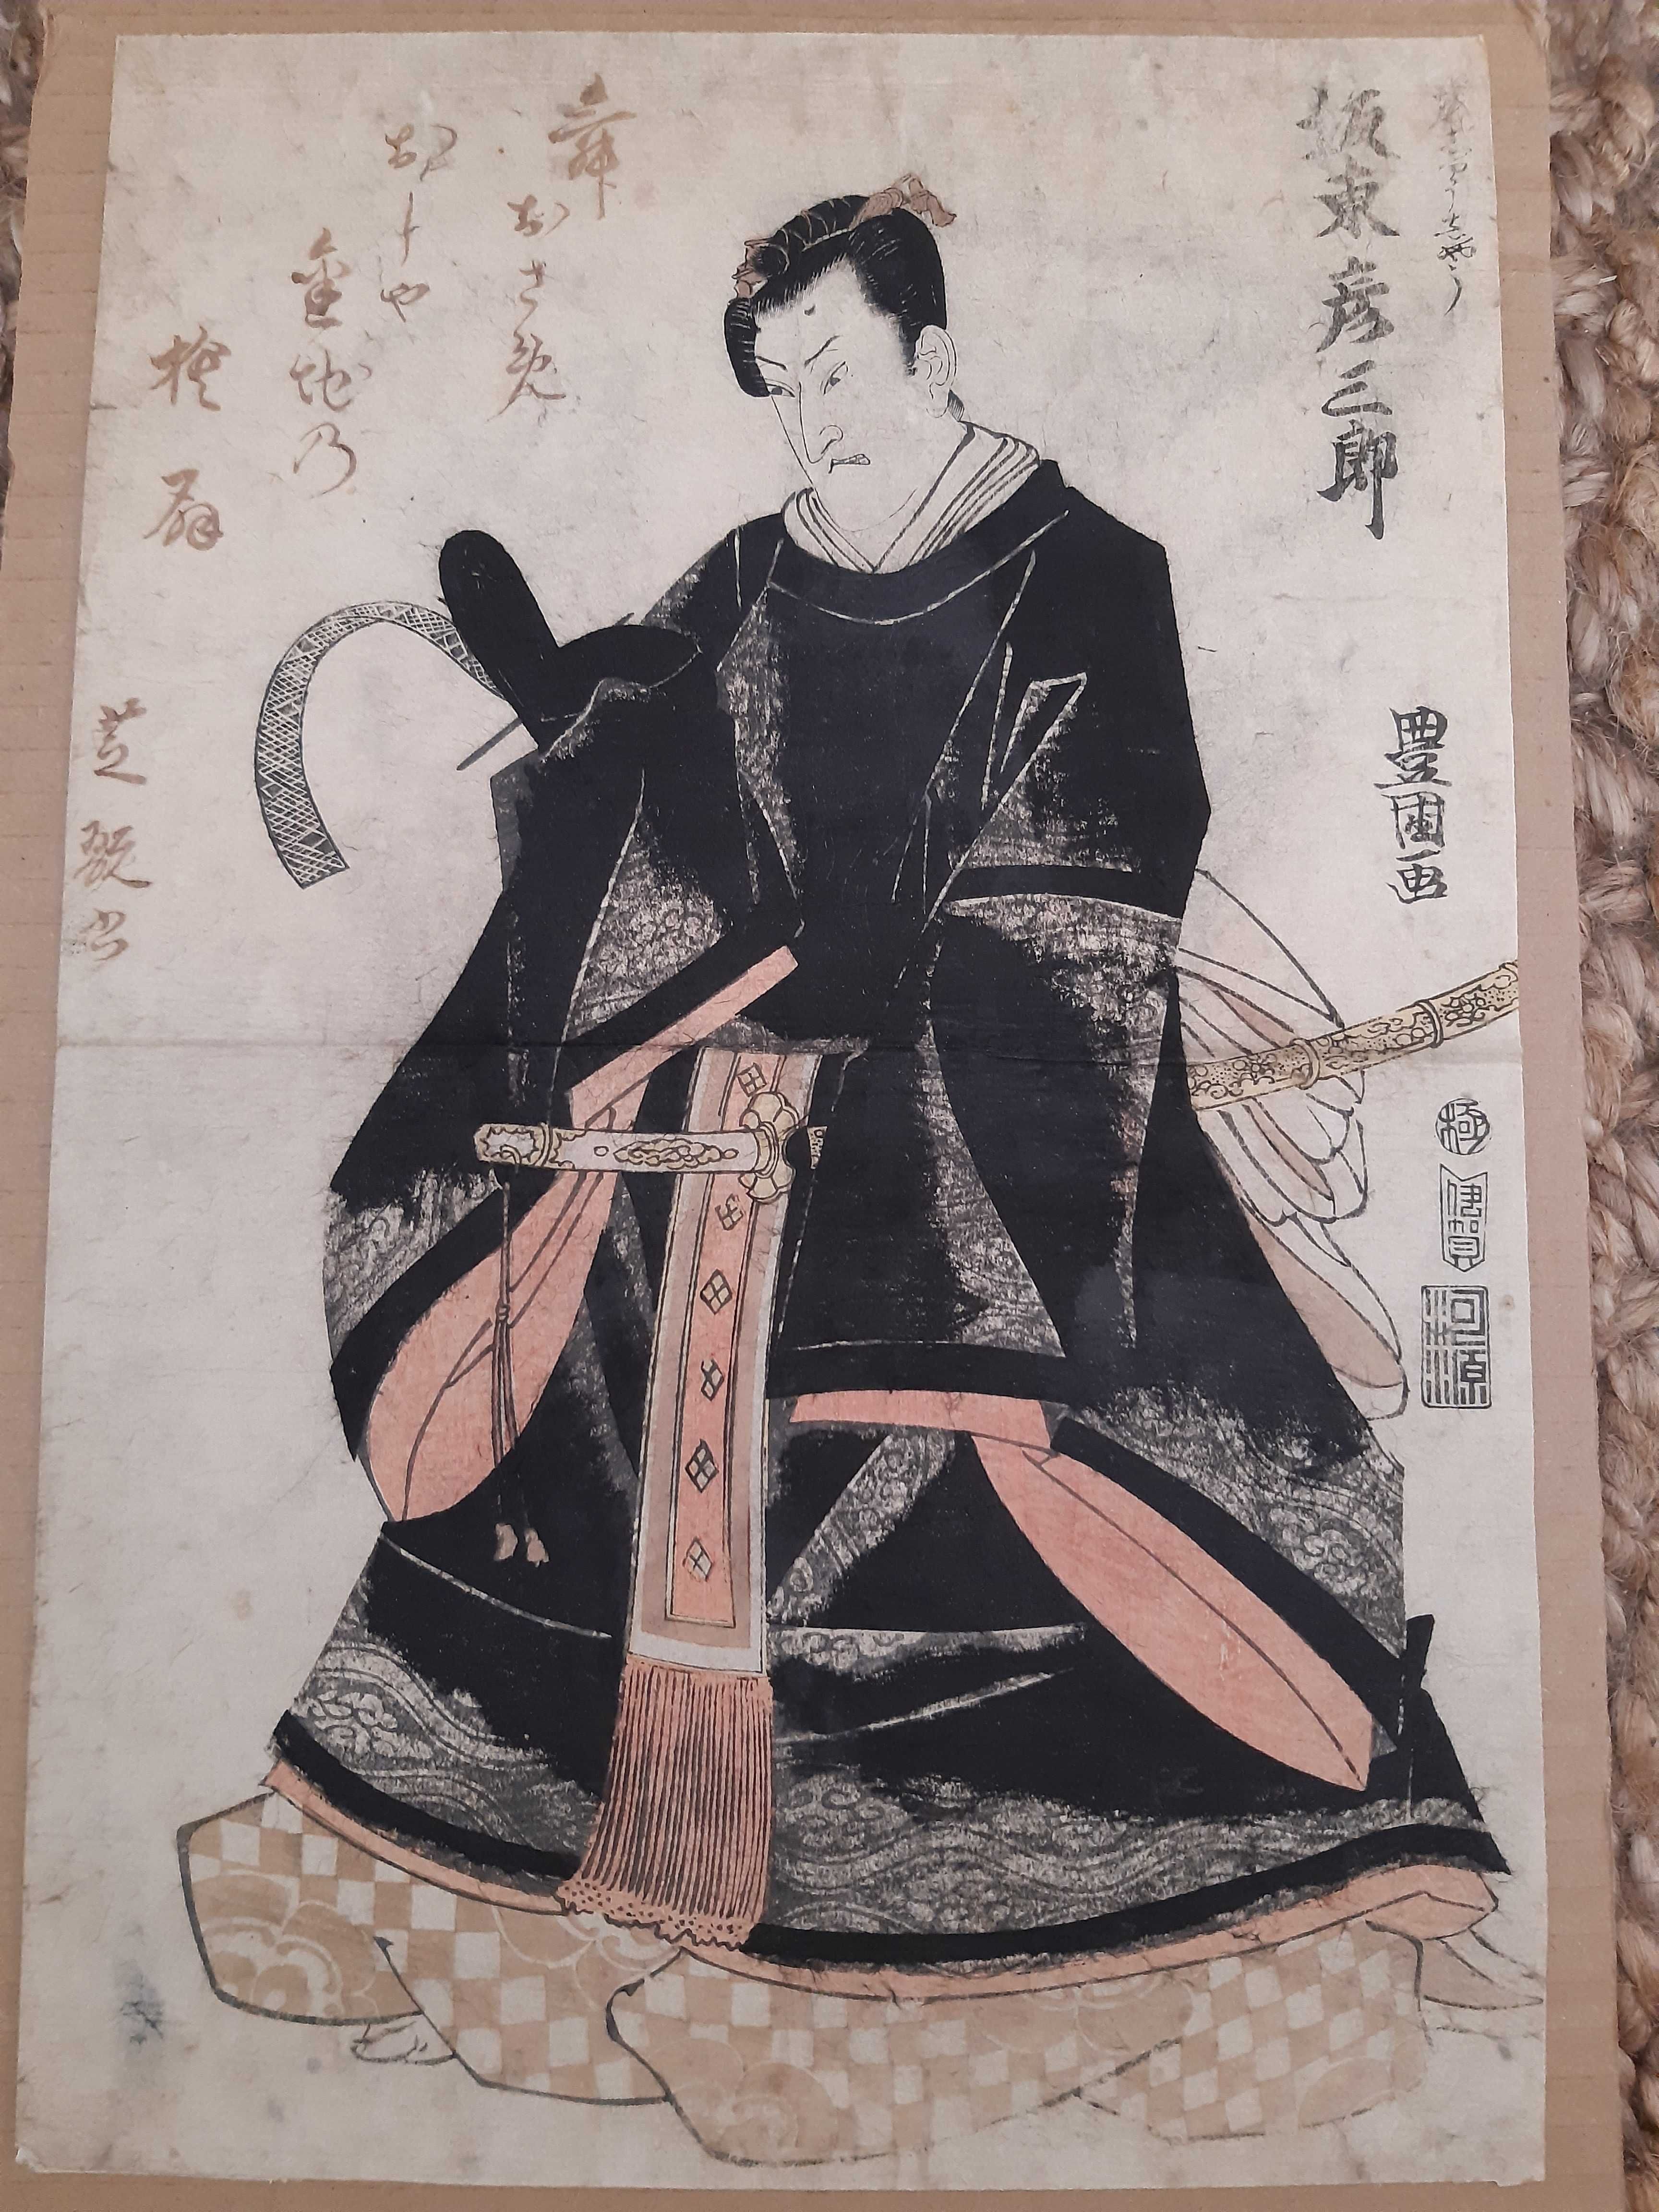 Stampa japoneza autentica (1811)